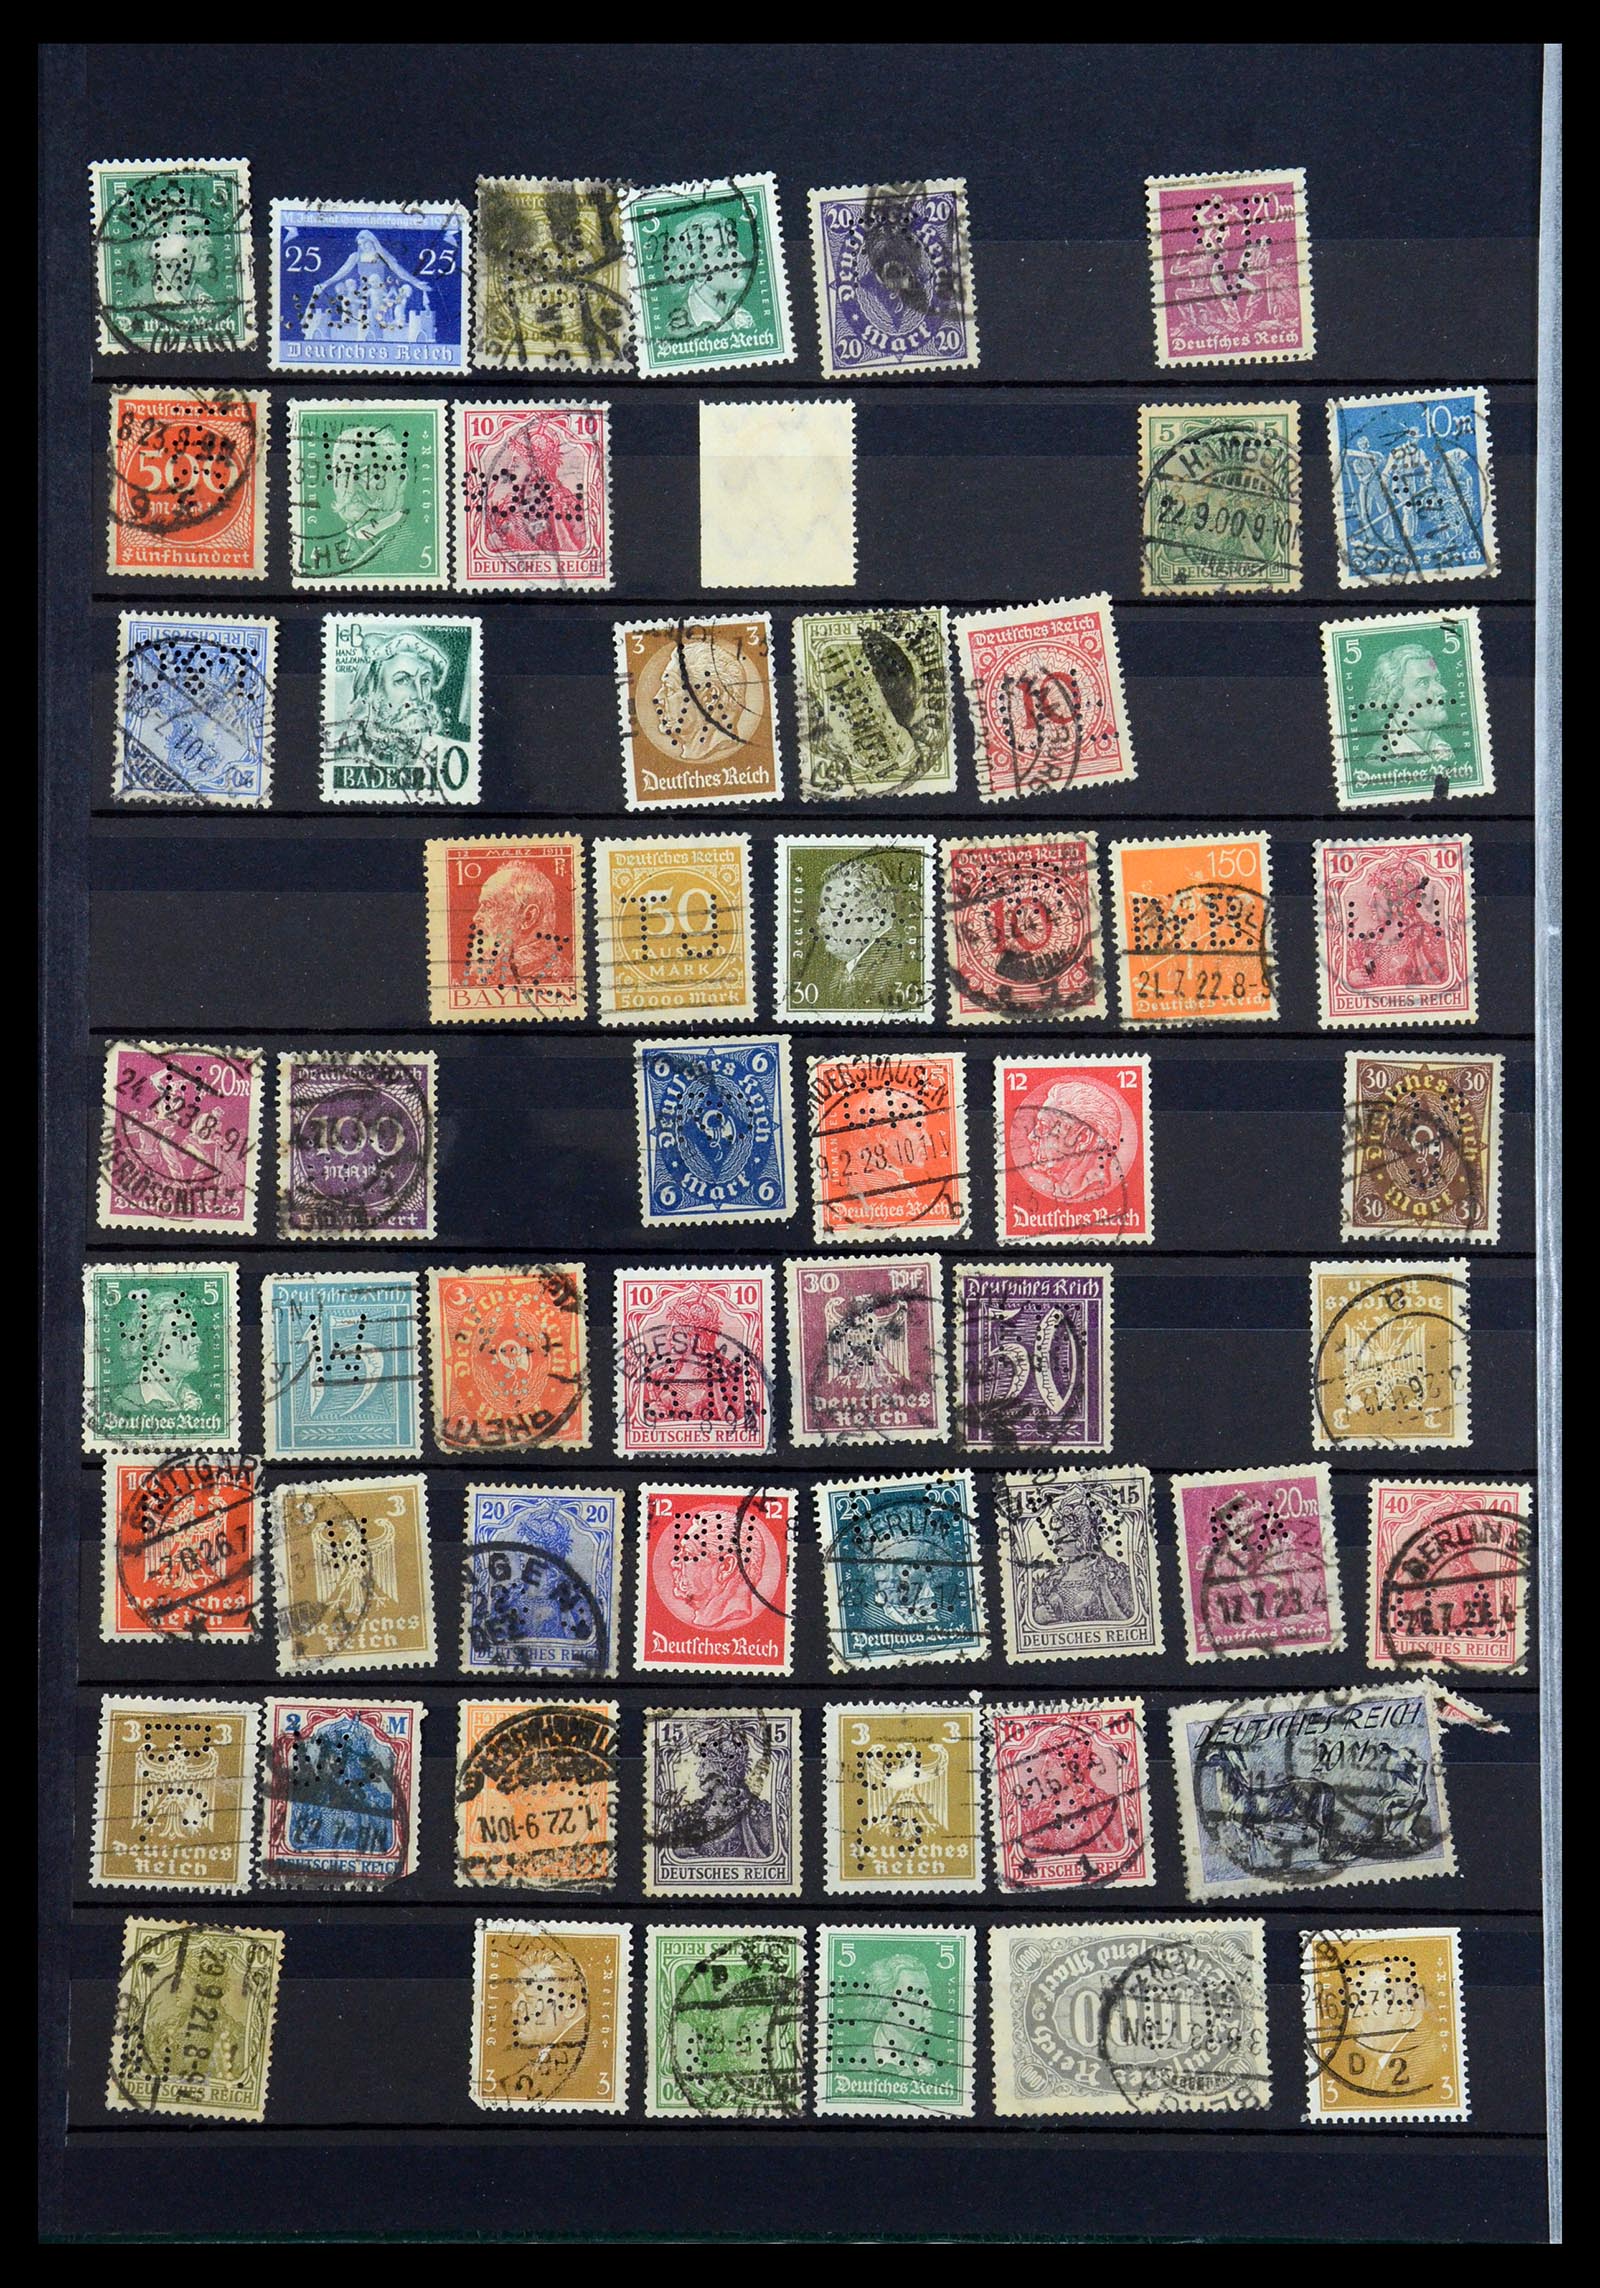 35183 014 - Stamp Collection 35183 German Reich perfins 1880-1945.